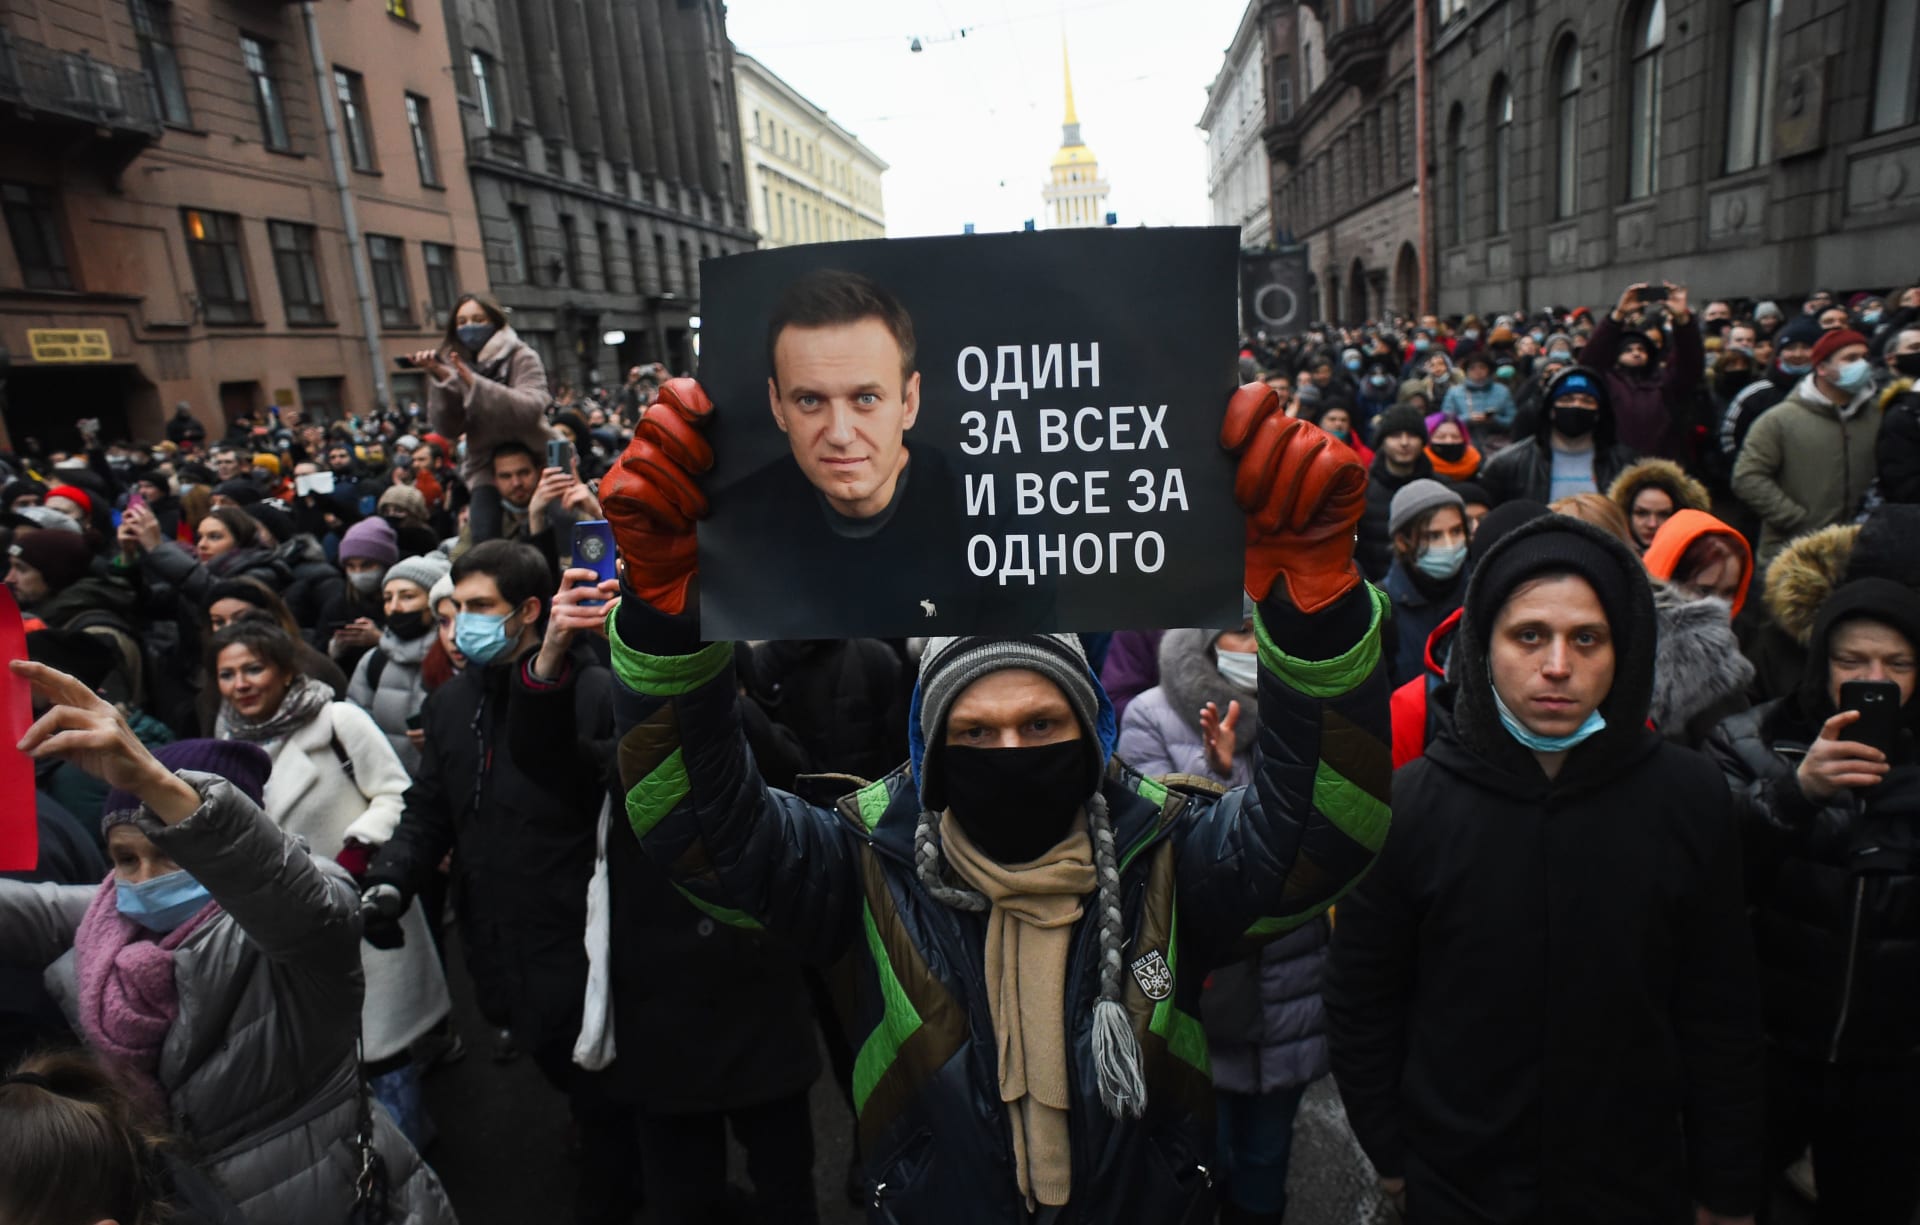 احتجاجات روسيا.. إدانة أمريكية وأوروبية لموجة الاعتقالات والقمع ضد مؤيدي نافالني 